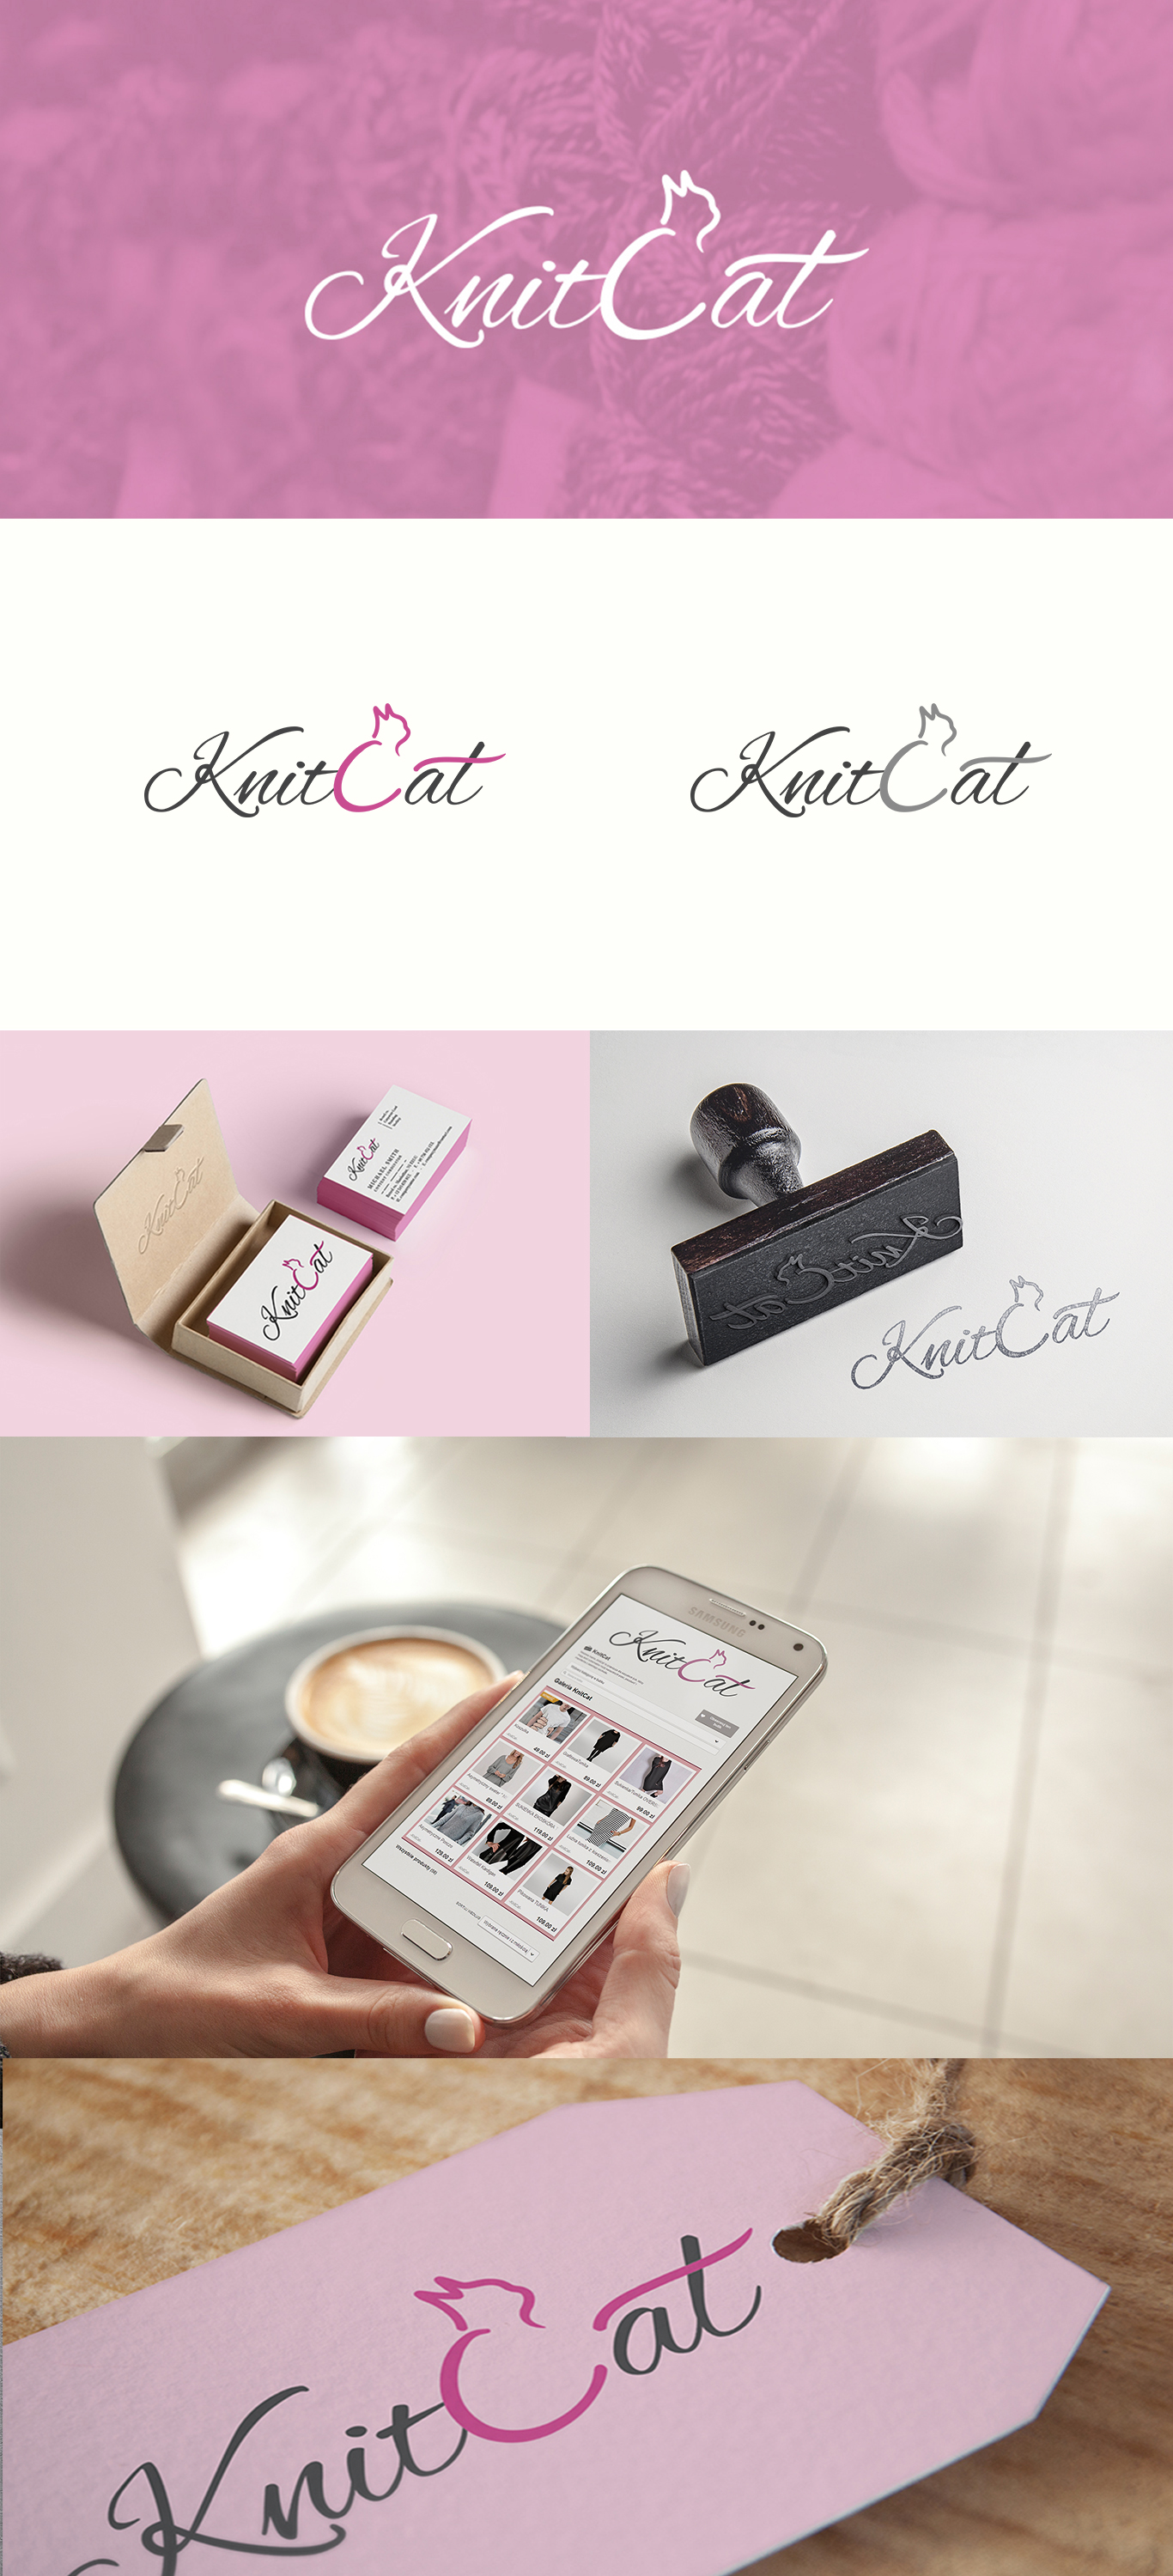 knitcat